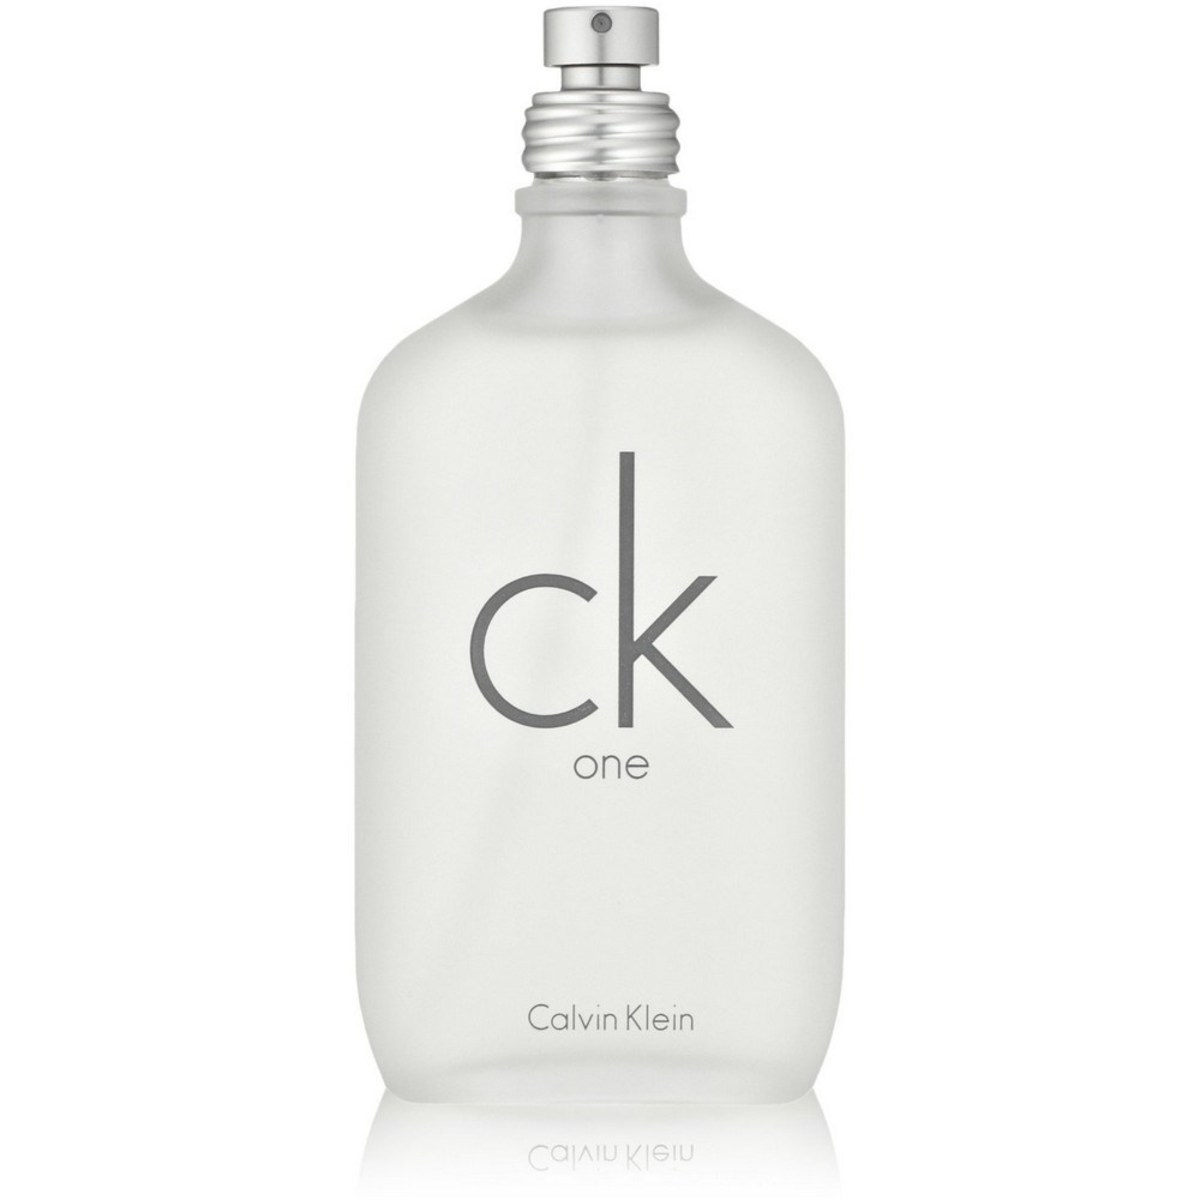 Calvin Klein One EDT Men 200ml Online at Best Price | Premium Perfumes ...